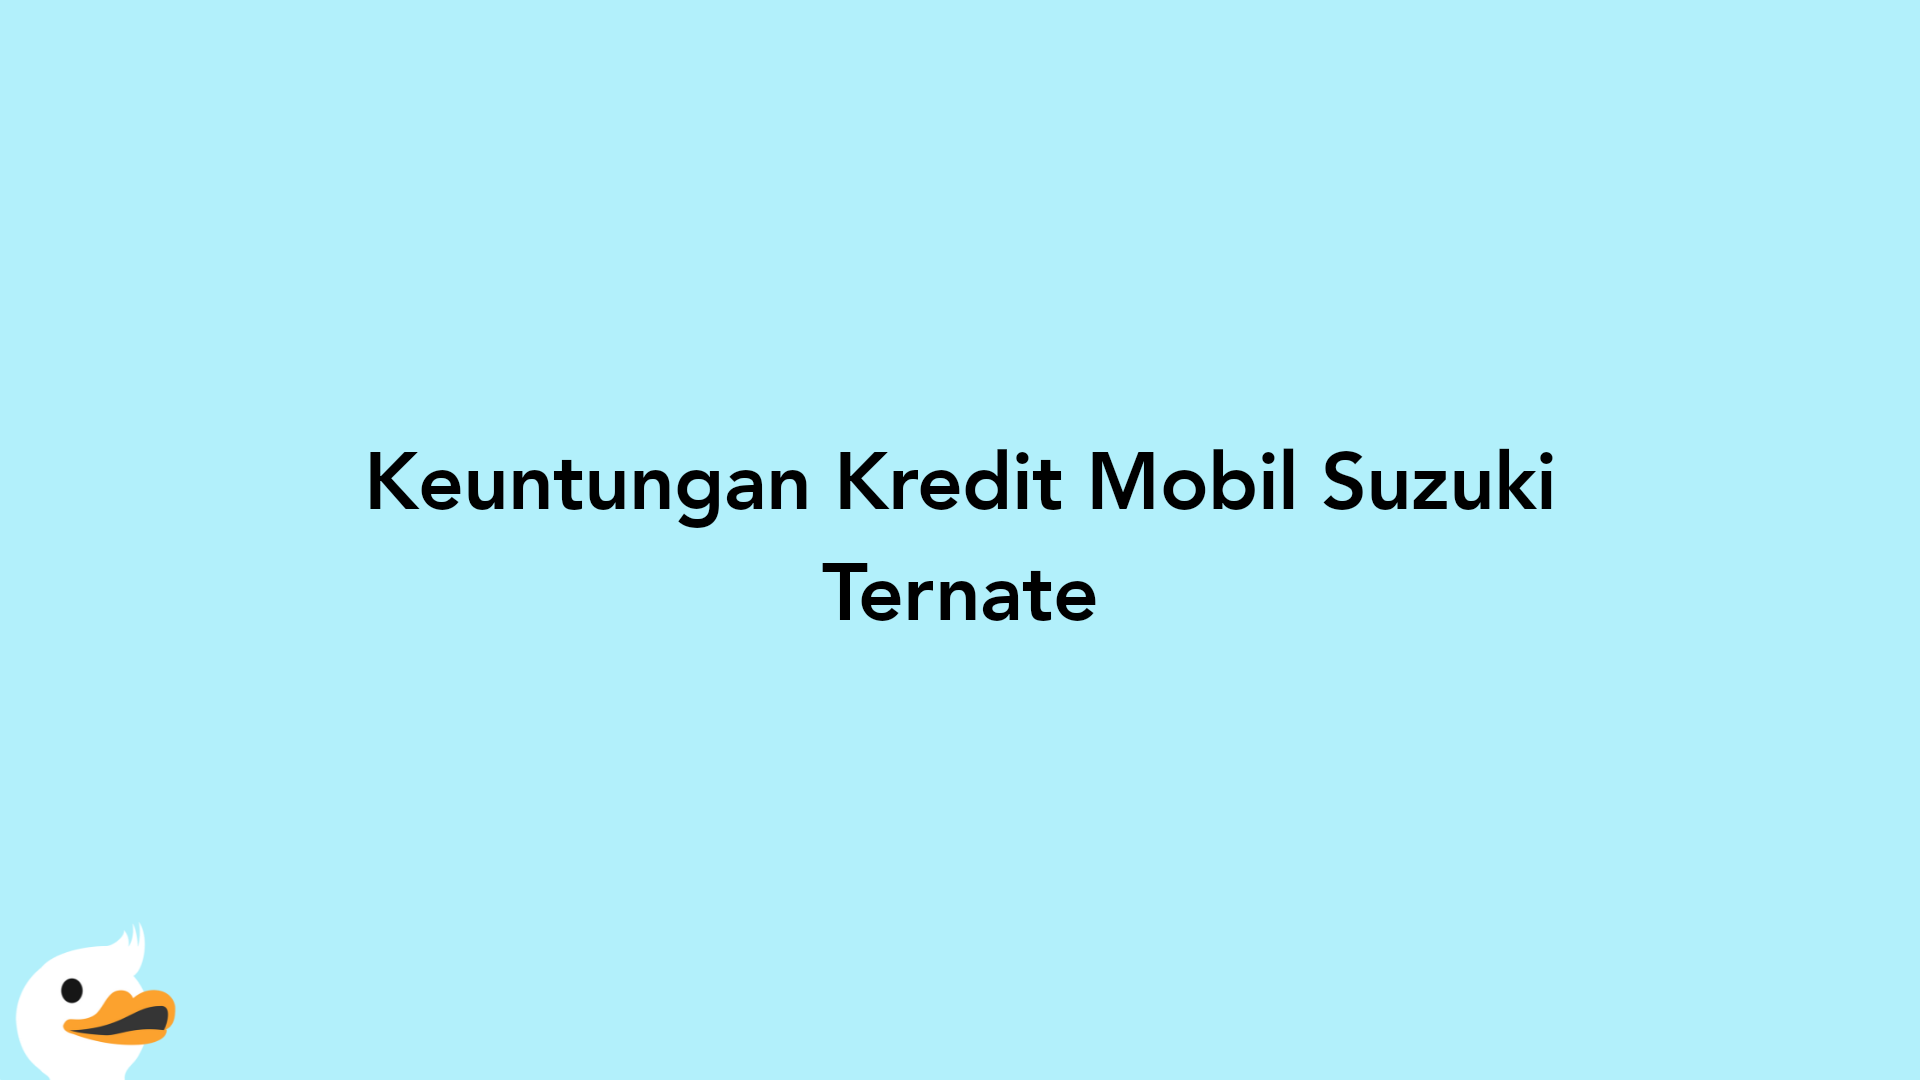 Keuntungan Kredit Mobil Suzuki Ternate